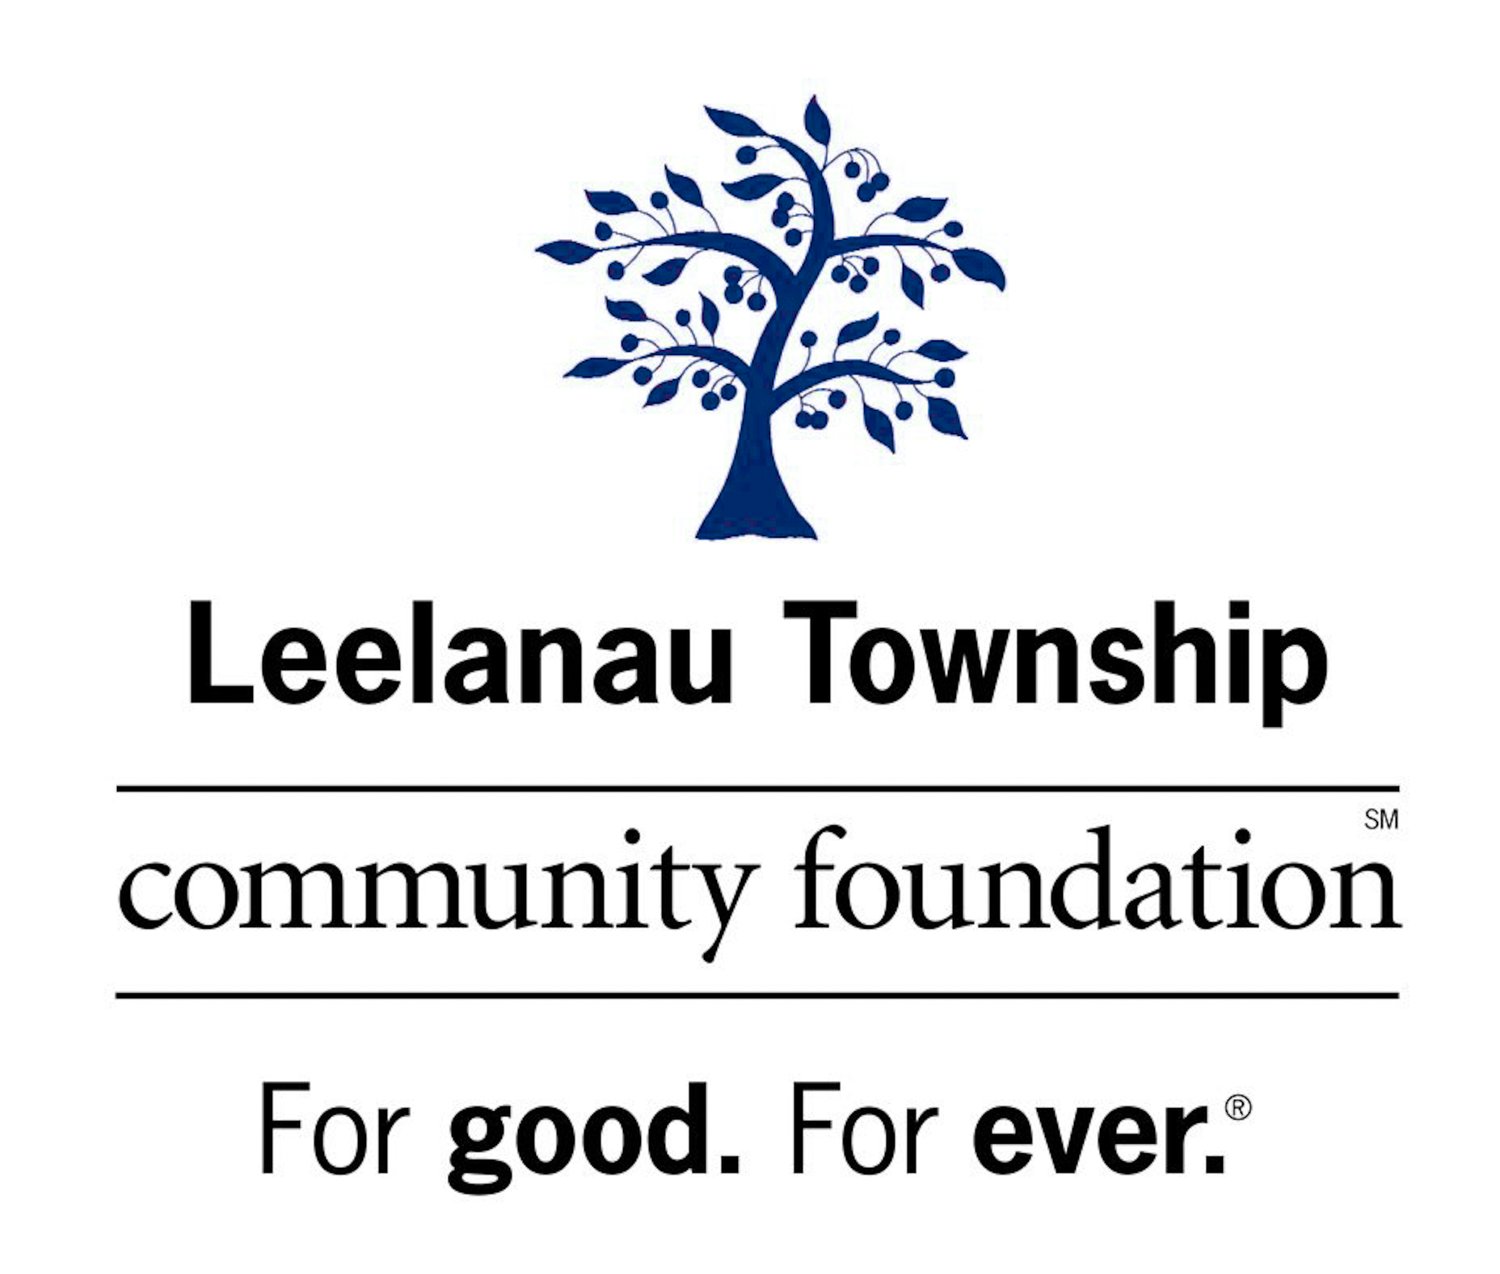 Leelanau Township Community Foundation